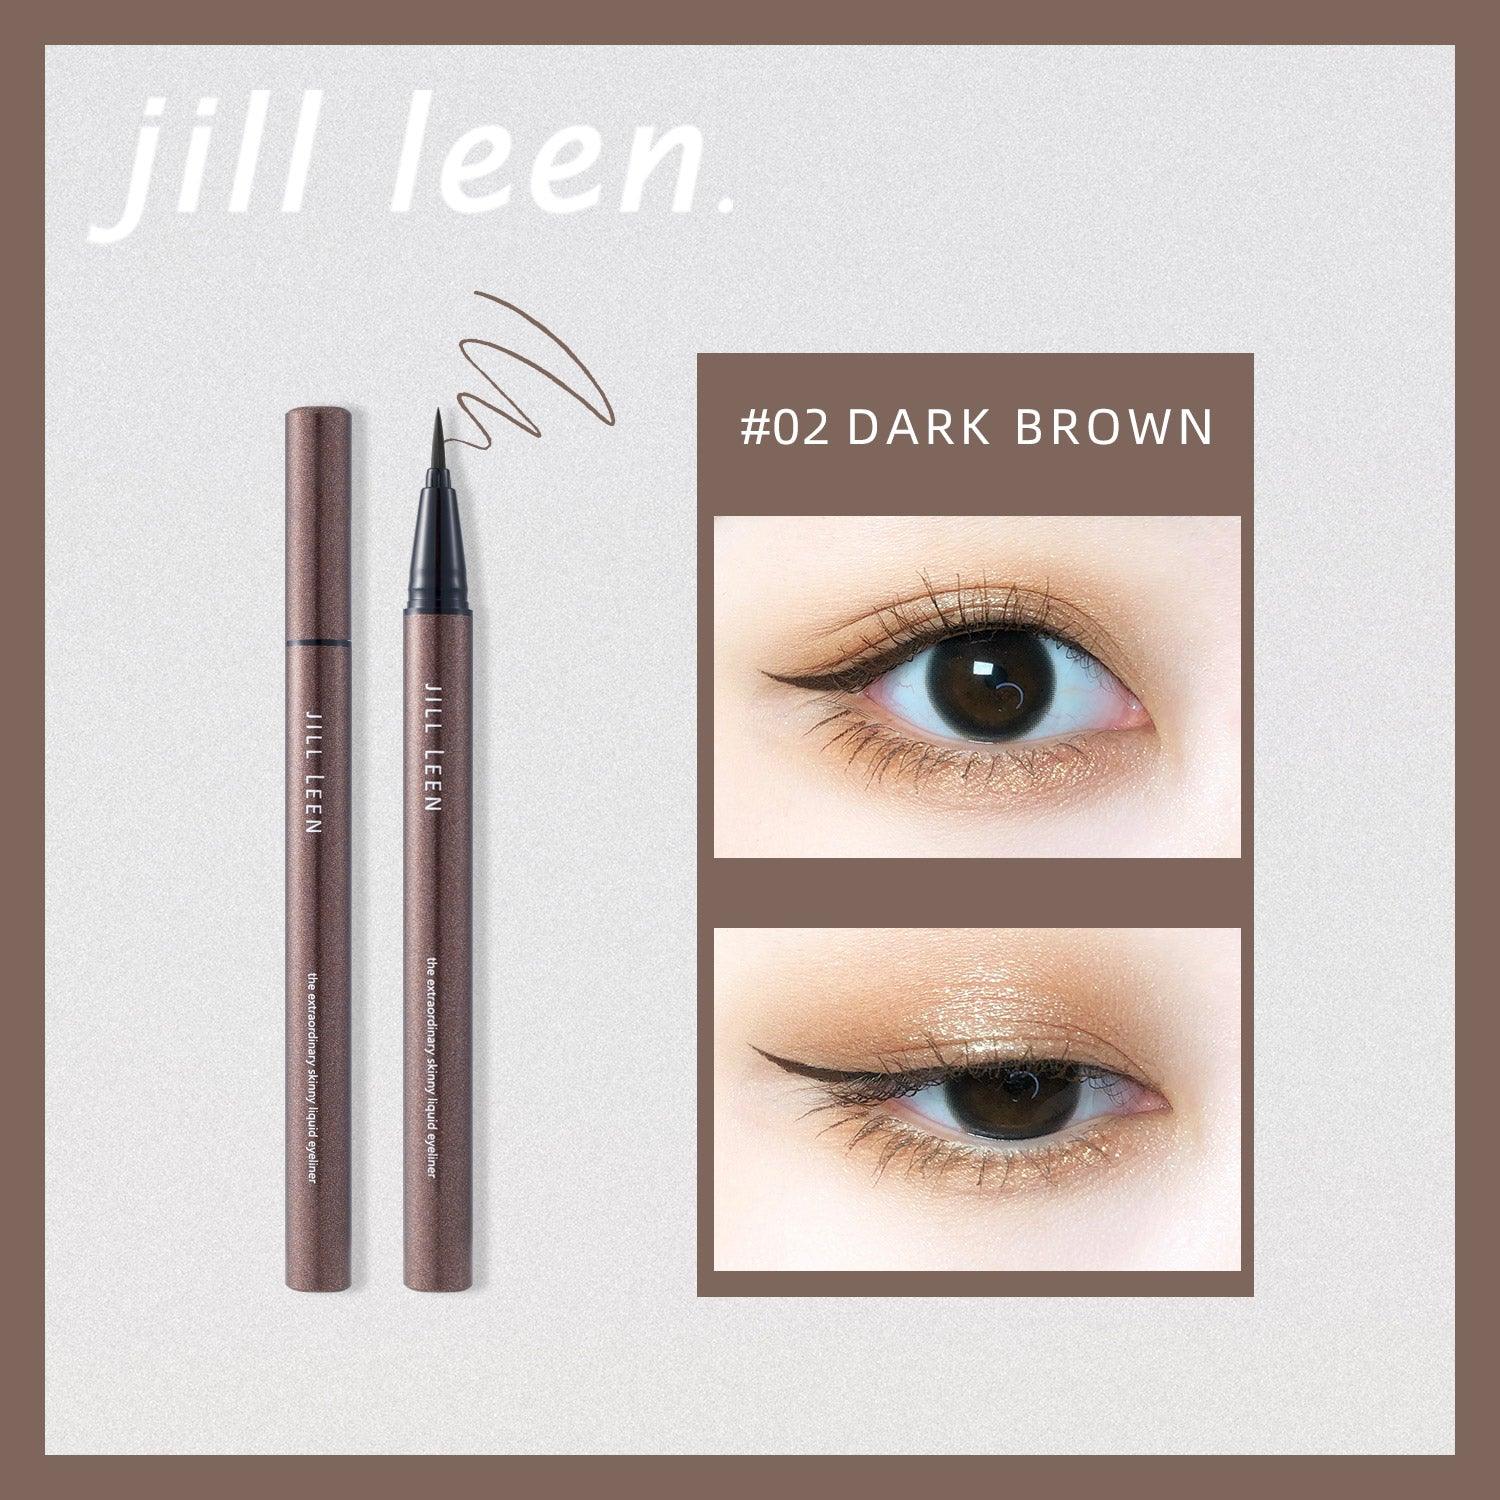 JILL LEEN Liquid Eyeliner Pen JL002 - Chic Decent